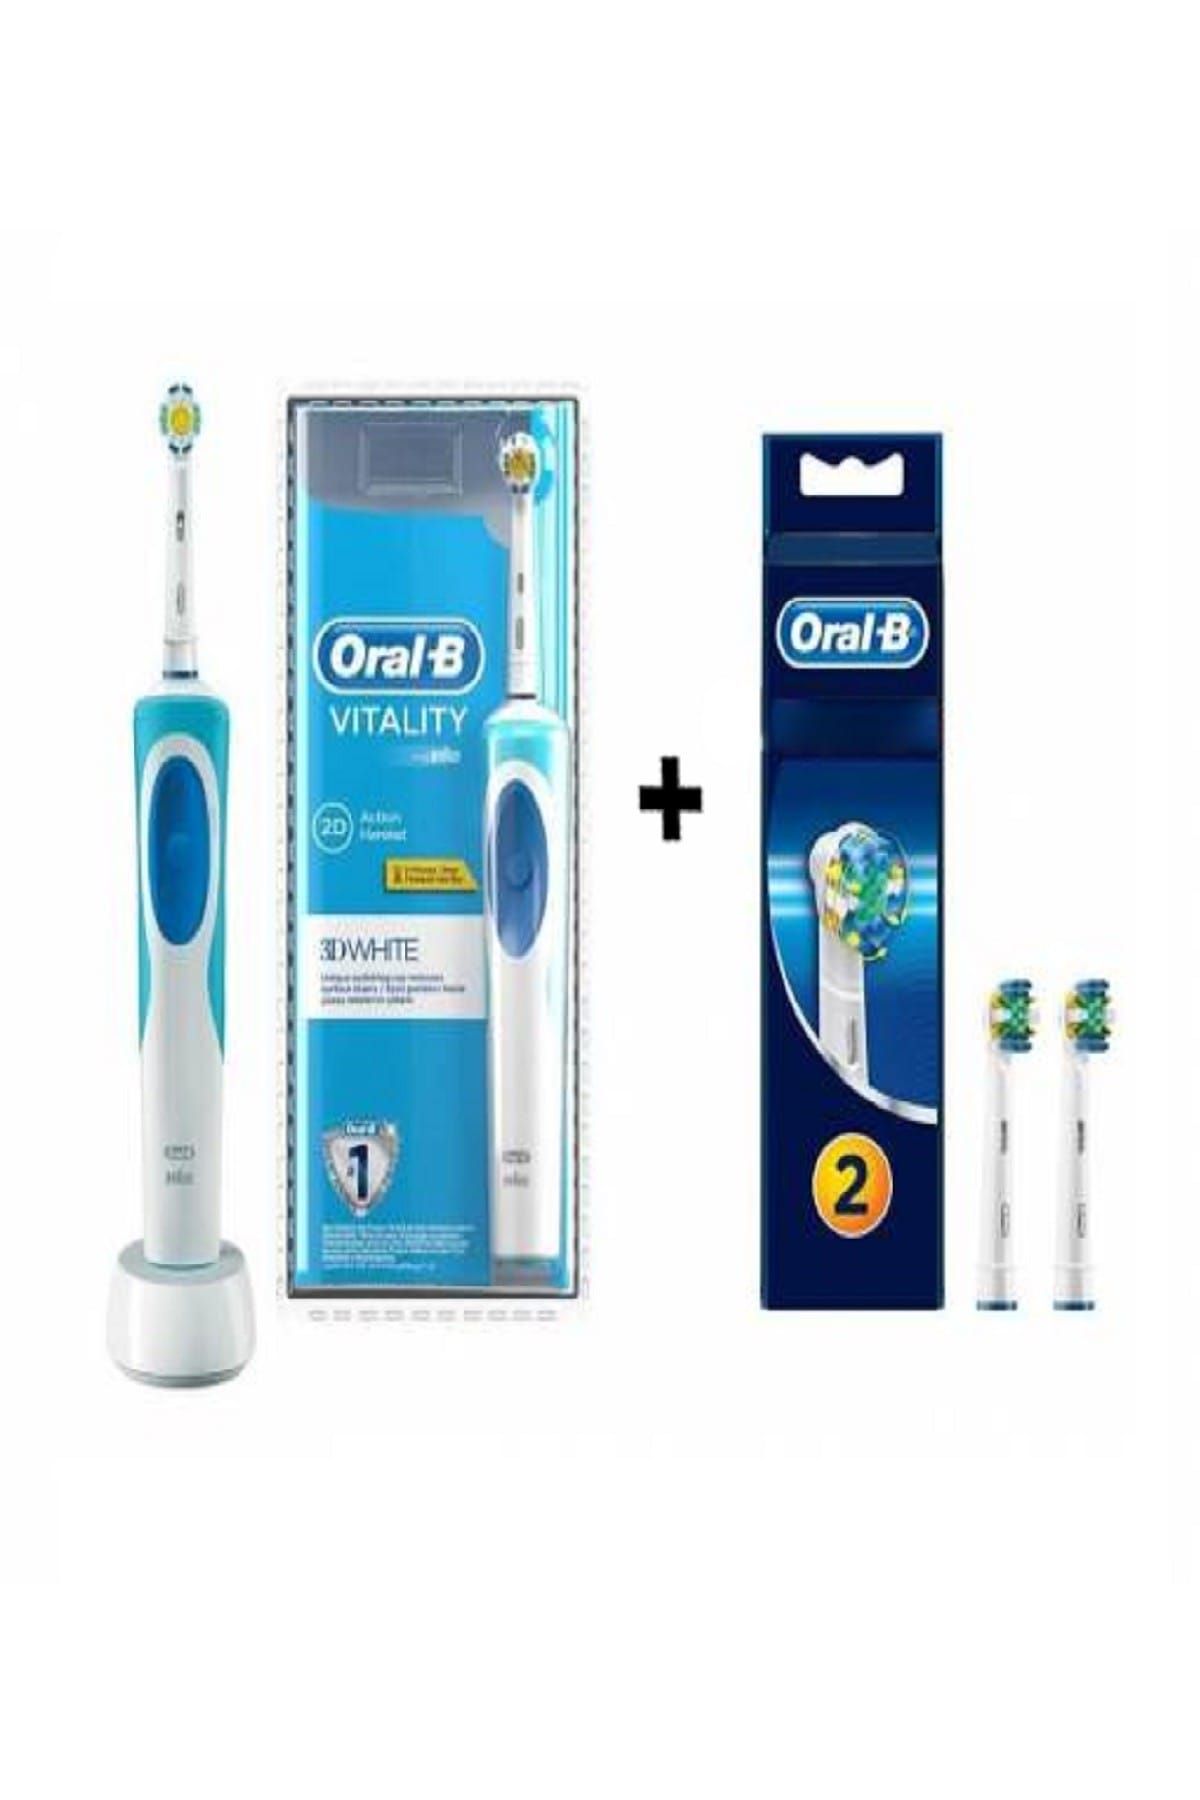 Oral-B Vitality Şarj Edilebilir Diş Fırçası 3D White + 2'Li Başlık Hediyeli